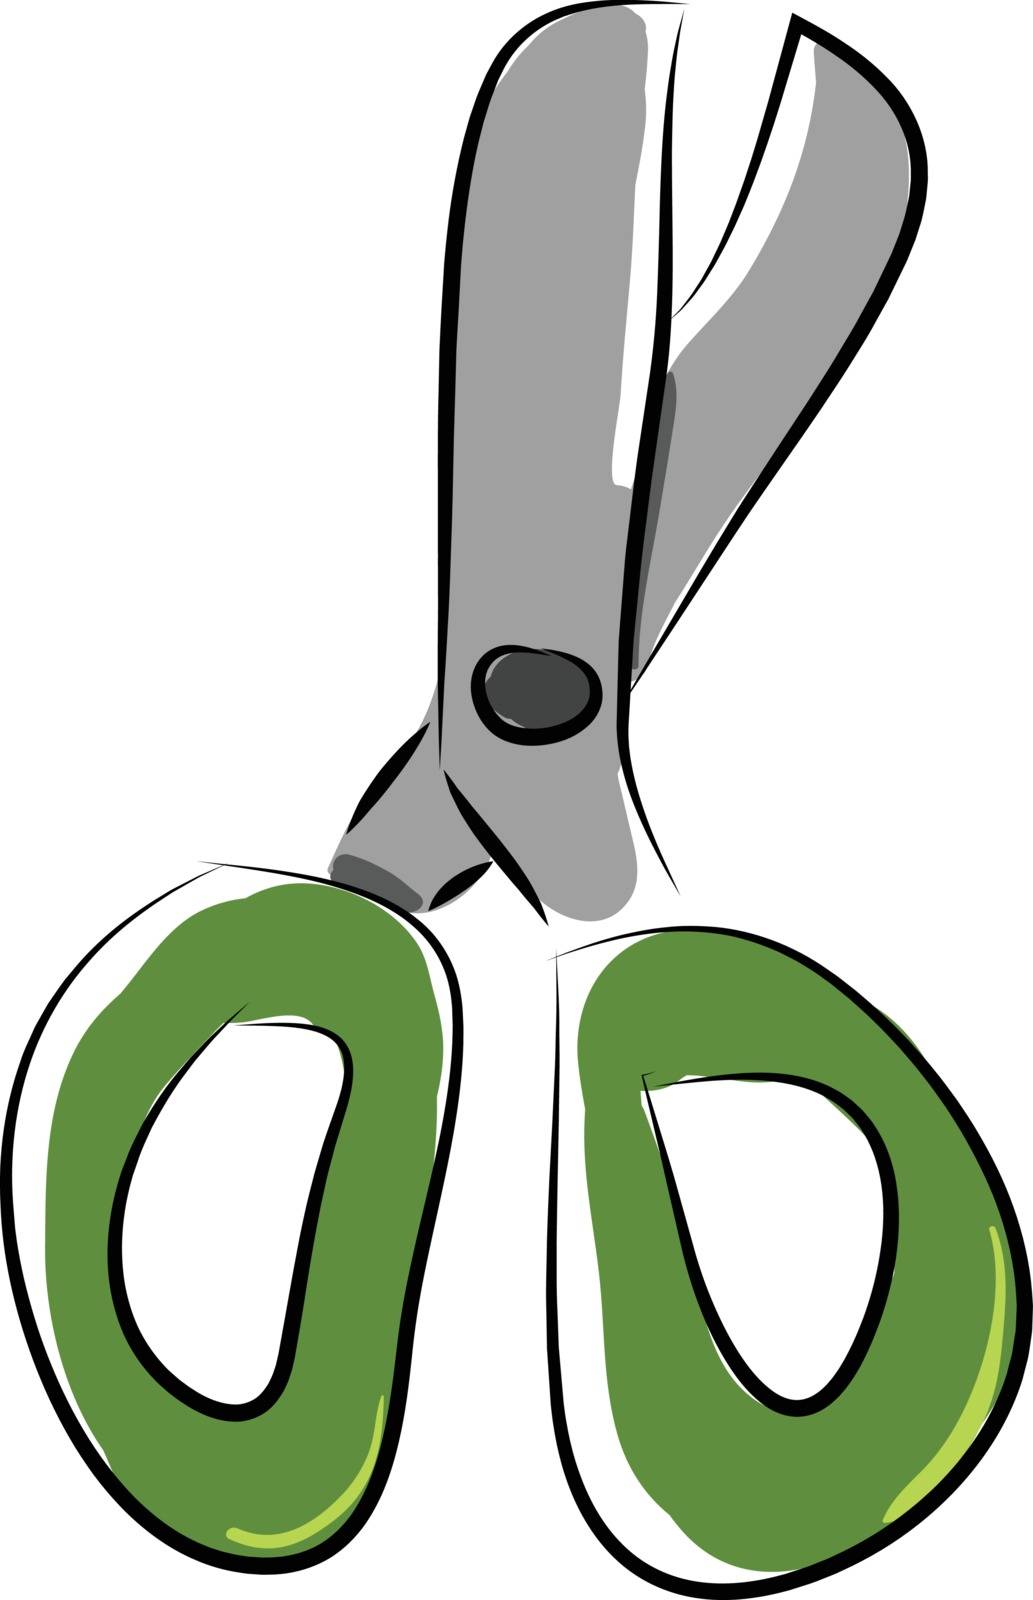 Simple cartoon green scissors vectro illustration on white backg by Morphart